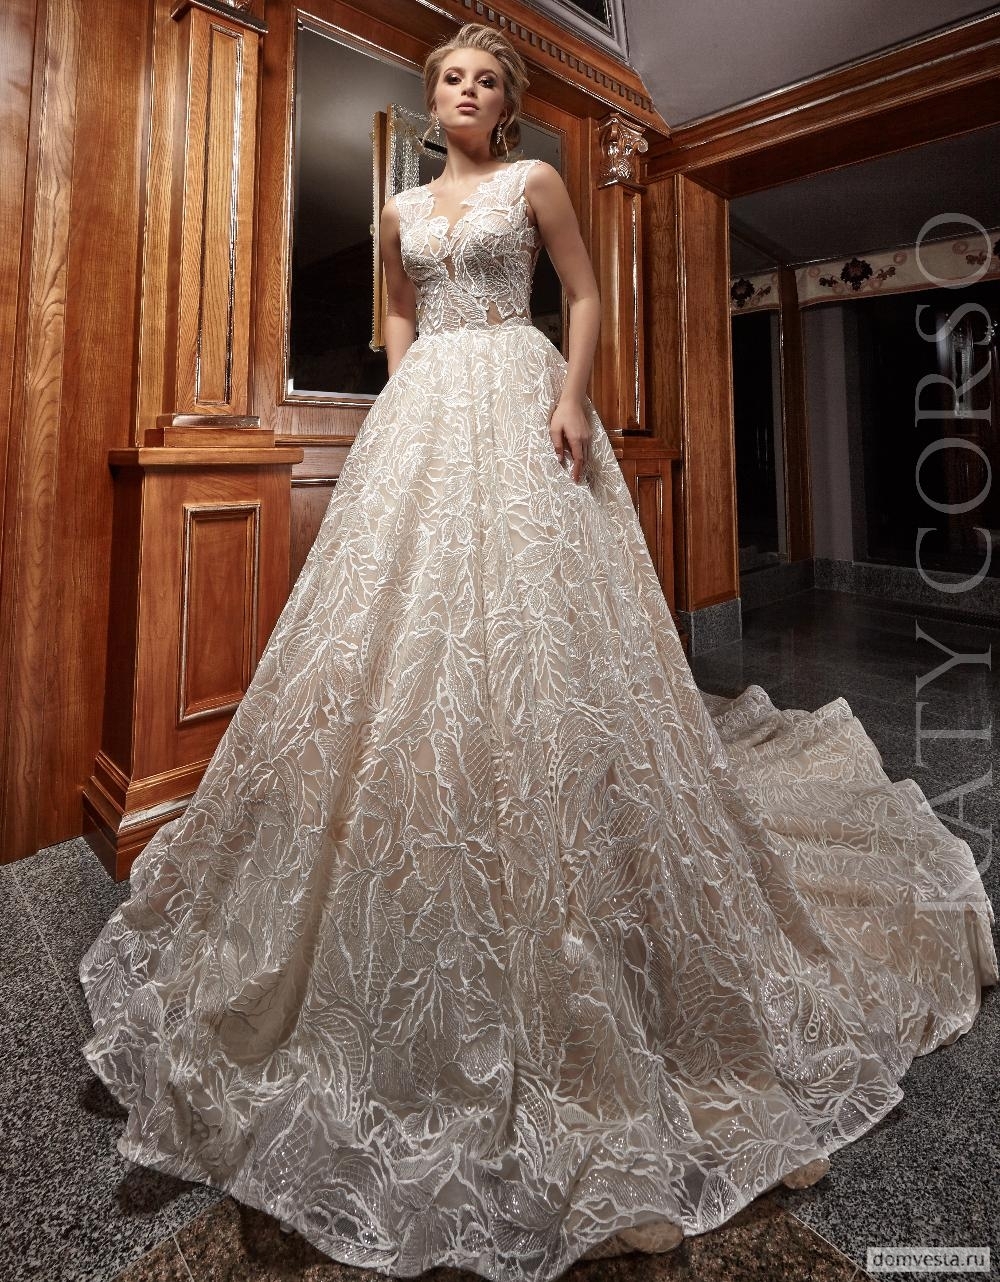 Свадебное платье Katy Corso<br />
RADO
Великолепное свадебное платье А-образного силуэта от кутюр. Полностью выполнено из эффектного кружева с крупным цветочным орнаментом.